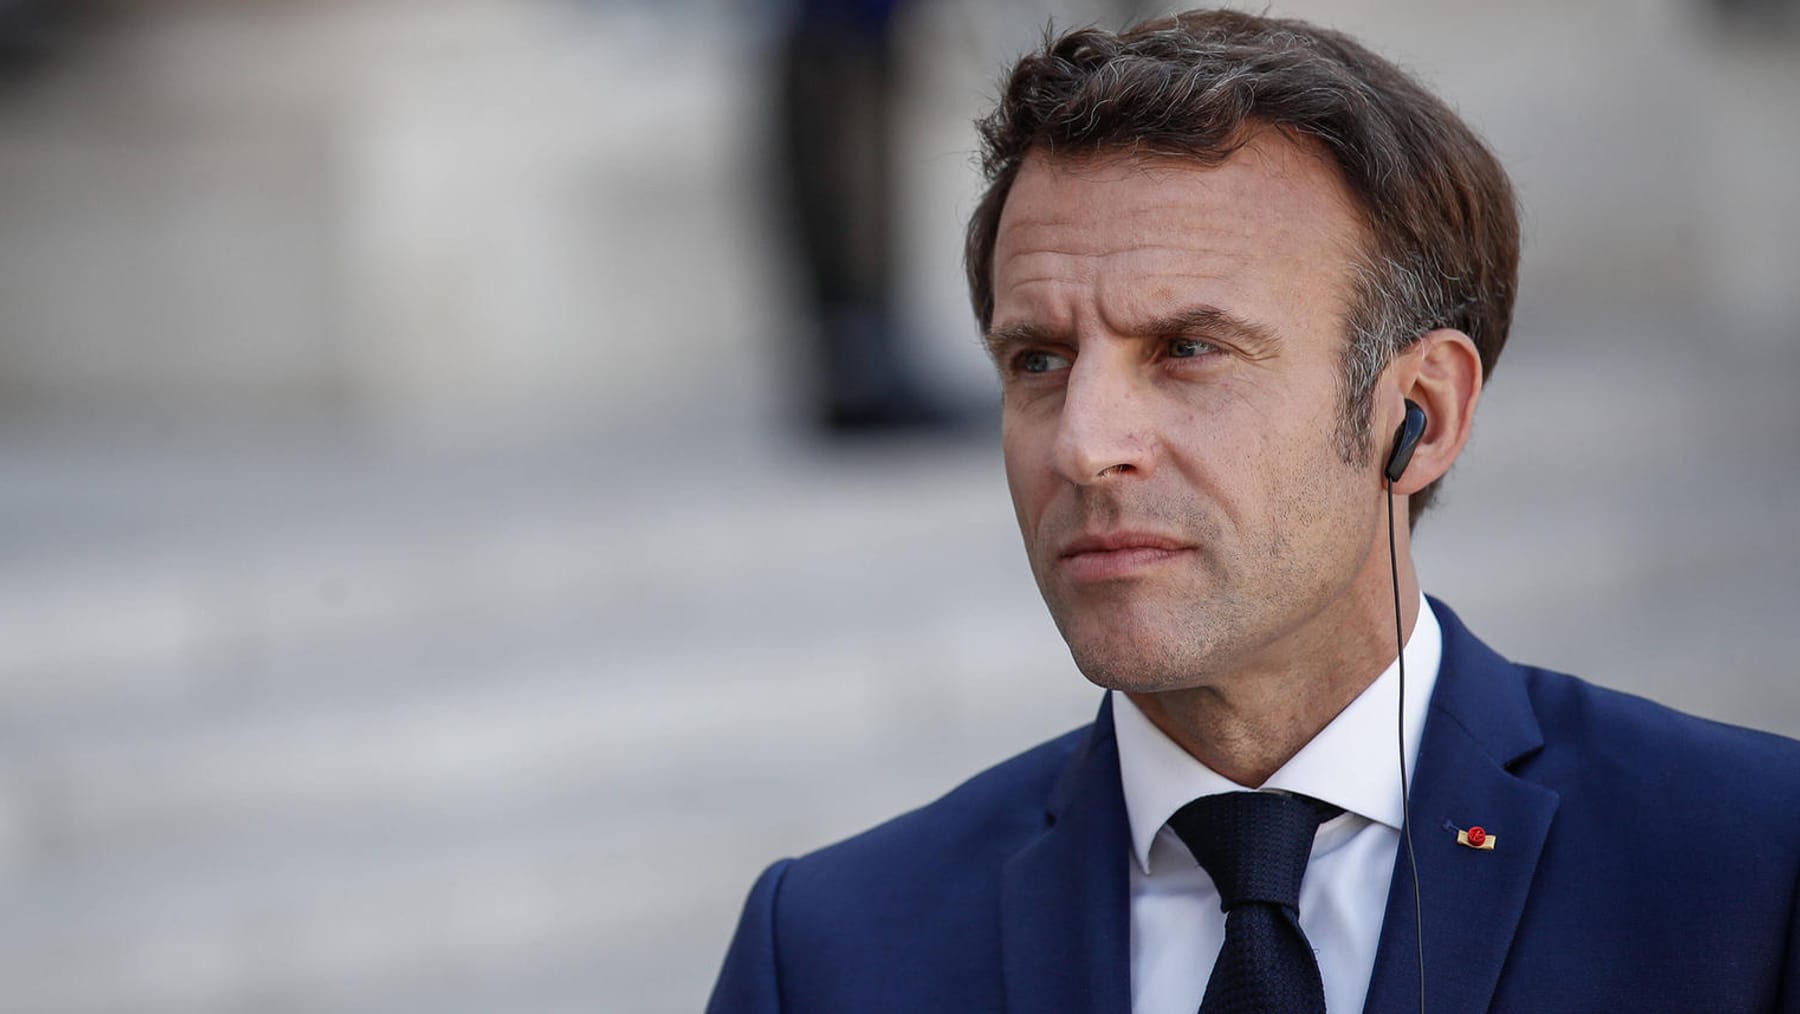 Le président Macron pourrait perdre la majorité absolue au Parlement